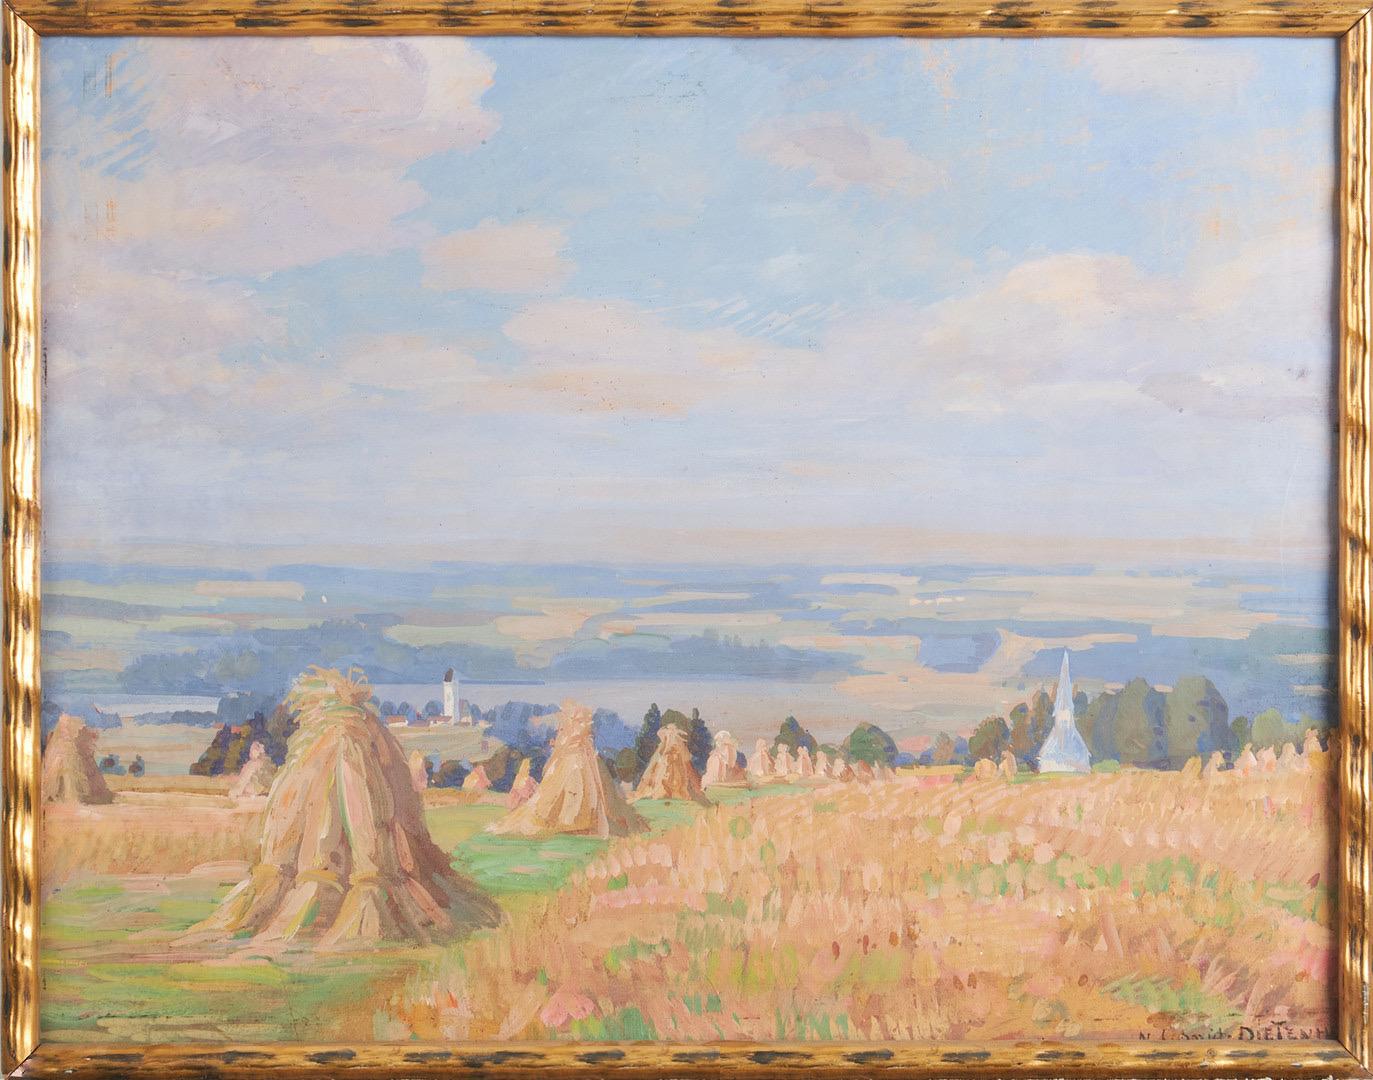 Nikolaus Schmid-Dietenheim Landscape Painting - 19th century romantic painting - Hay Harvest - Meules dans un paysage